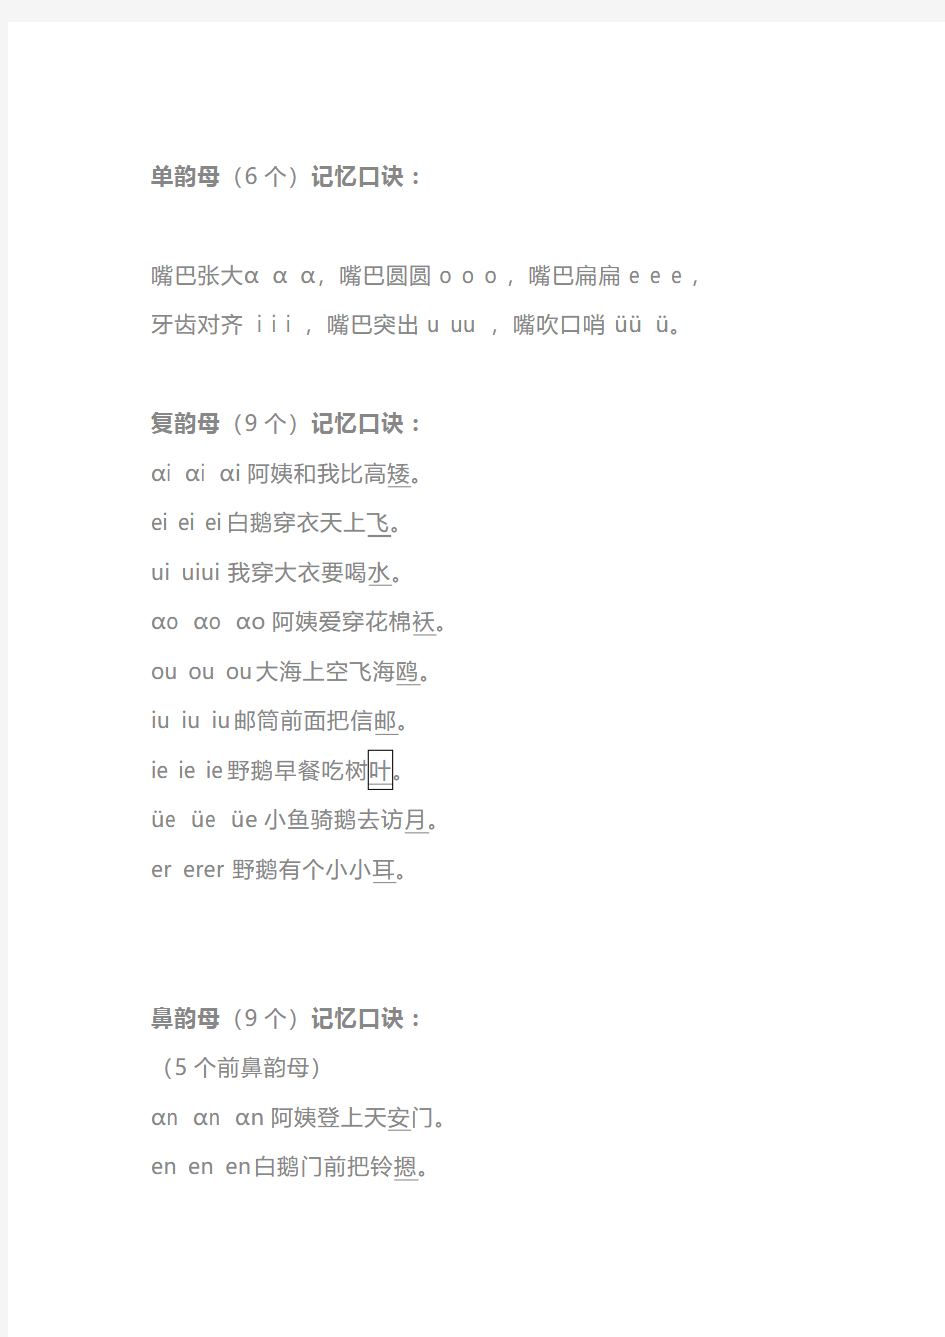 【一年级语文】汉语拼音的拼读及书写规则